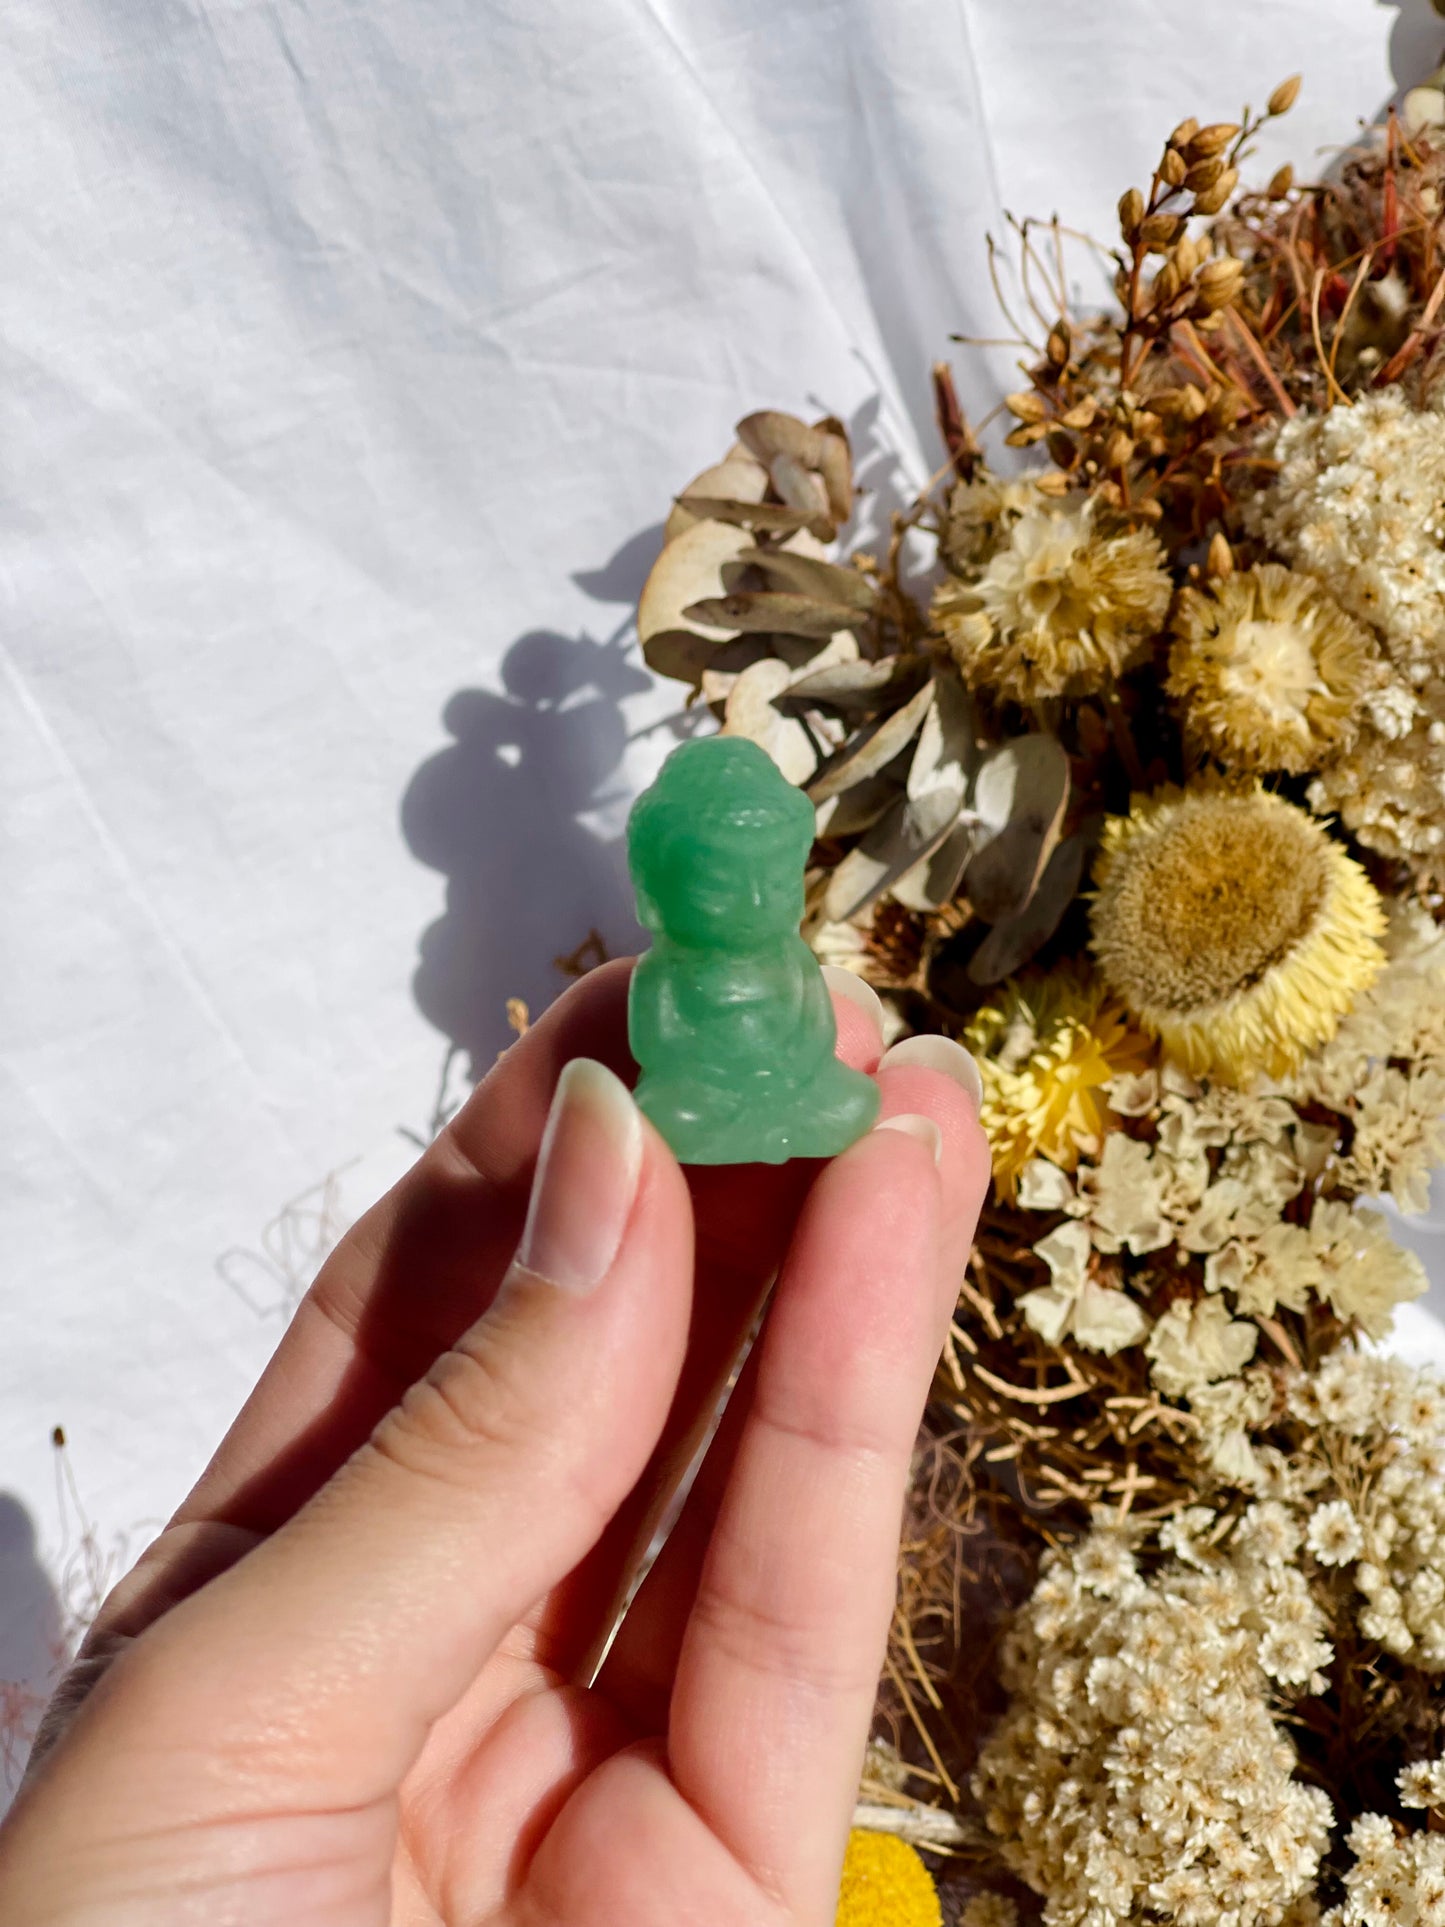 Green Aventurine Mini Buddha